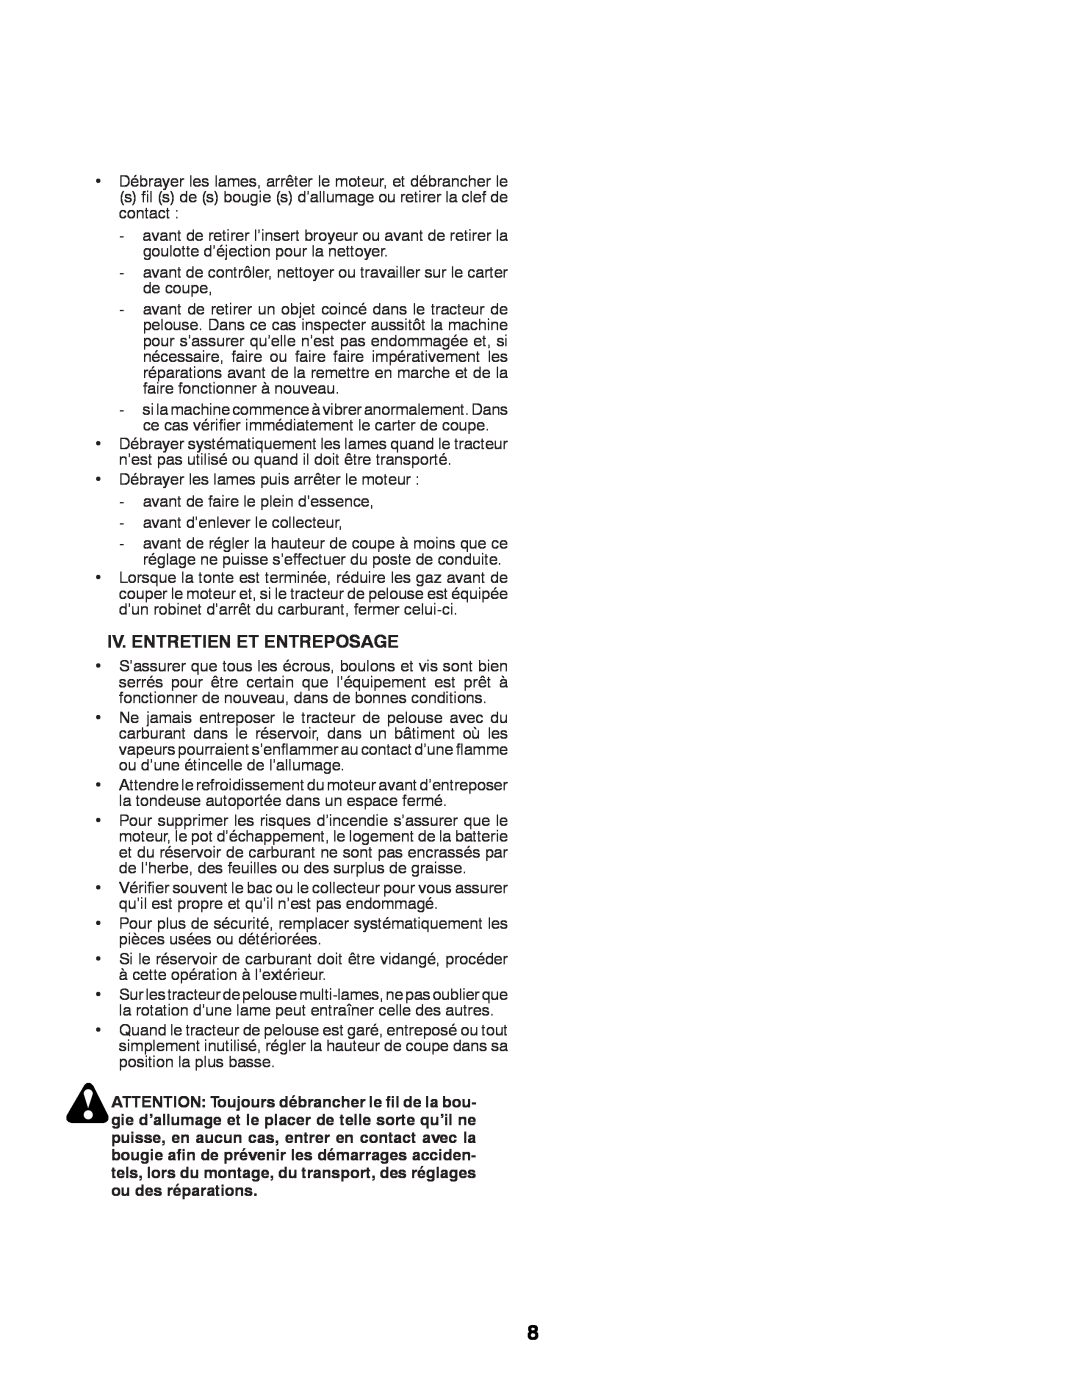 Husqvarna LT131 instruction manual Iv. Entretien Et Entreposage 